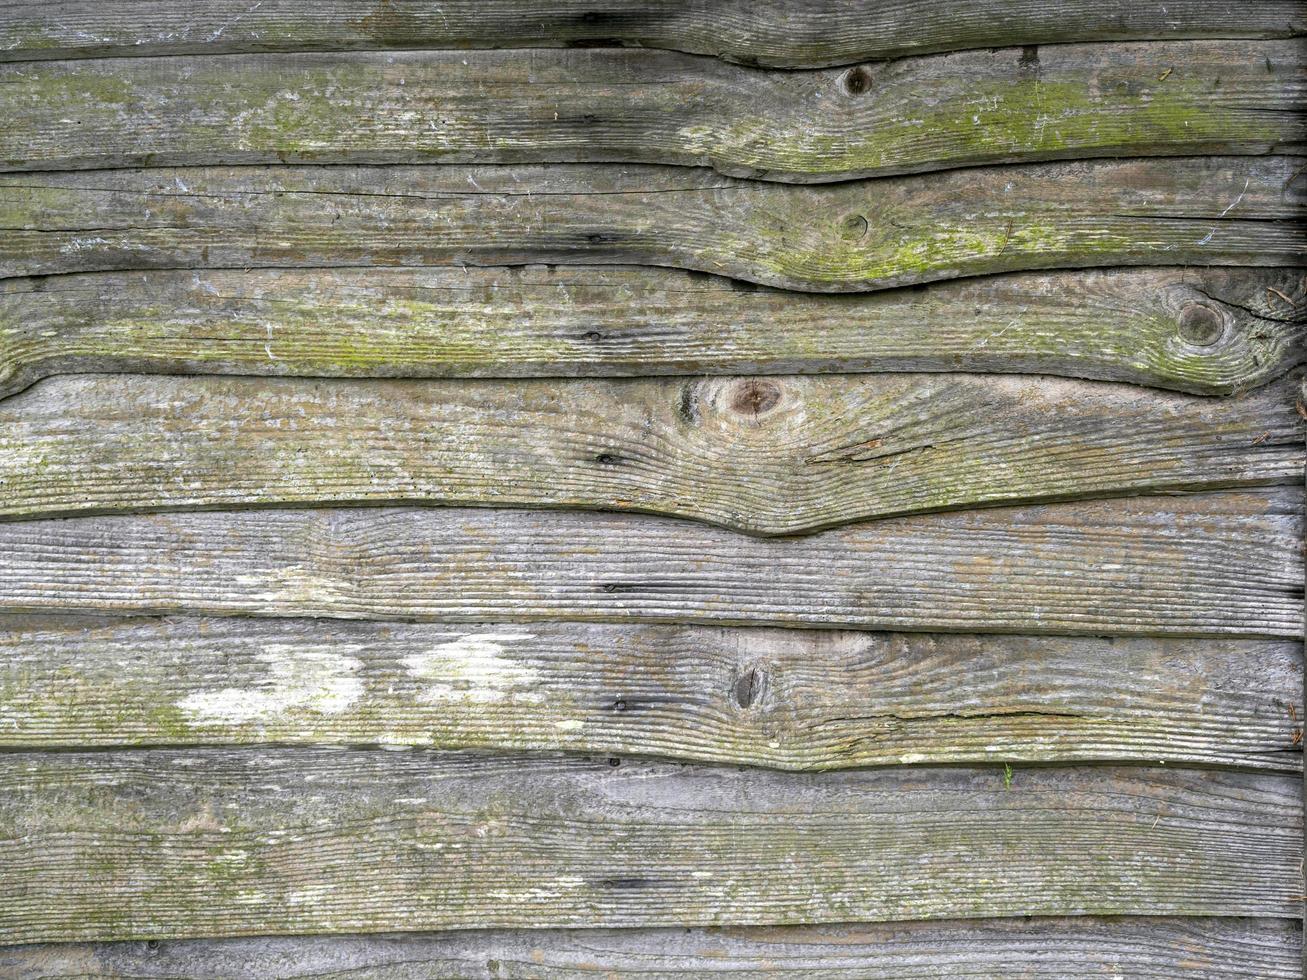 ripas de madeira em uma velha cerca mofada de jardim foto